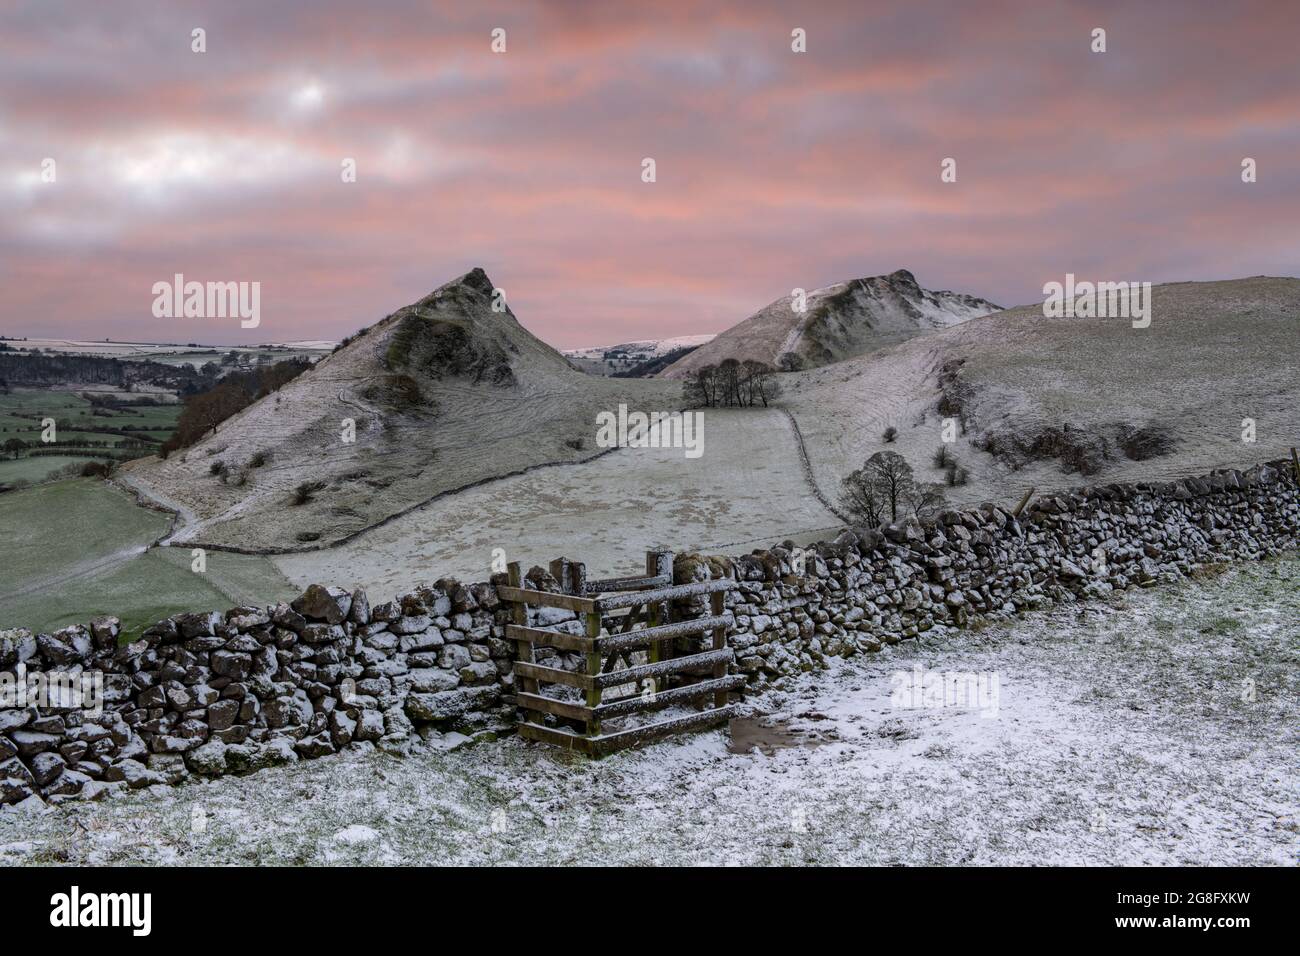 La vue de Chrome Hill et Parkhouse Hill avec dépoussiérage de neige, Peak District, Derbyshire, Angleterre, Royaume-Uni, Europe Banque D'Images